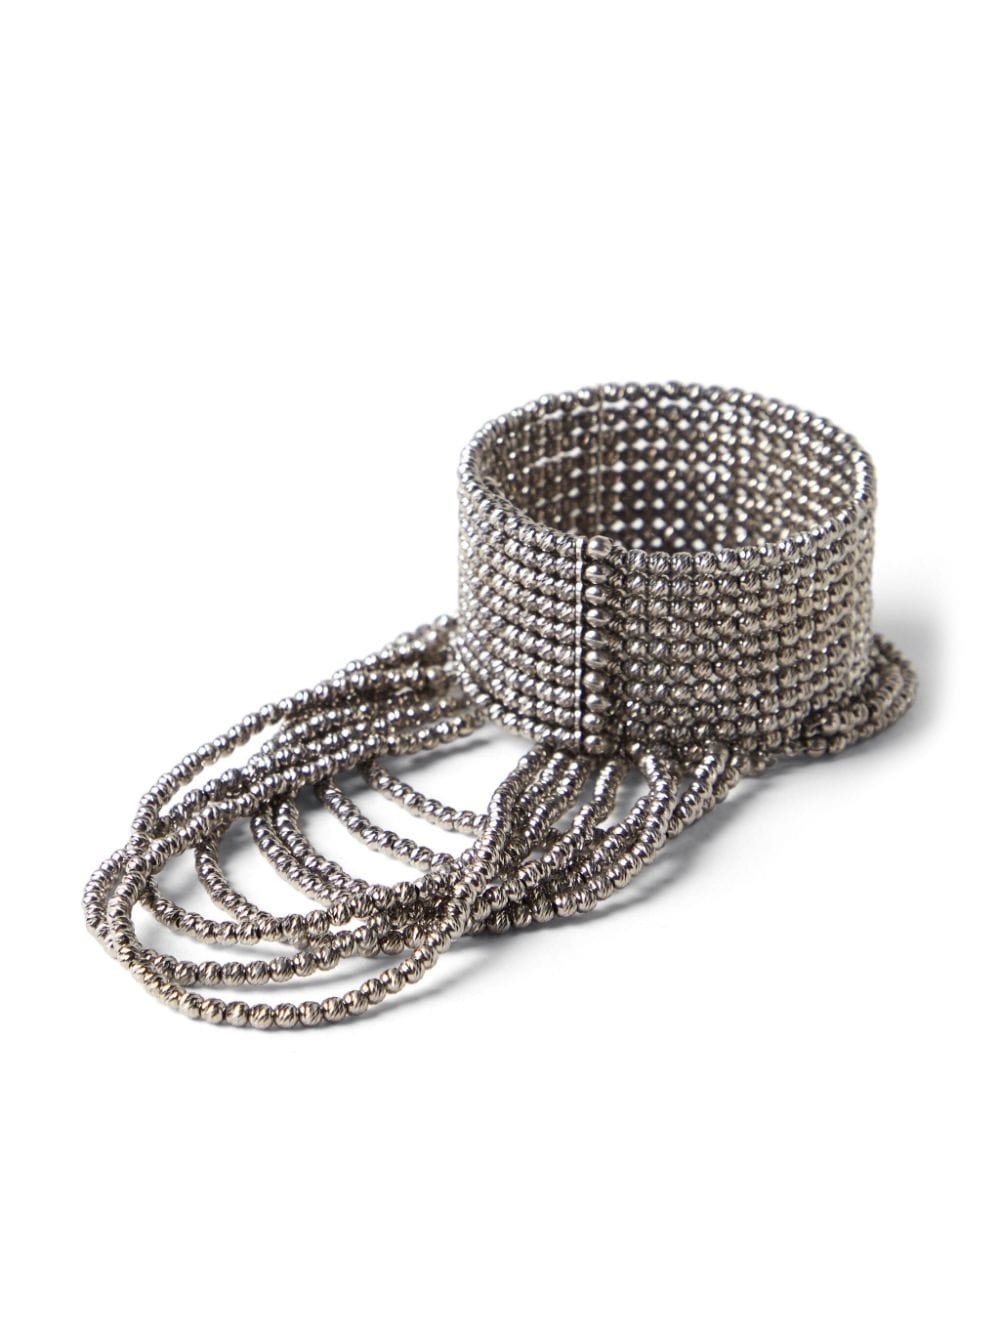 sterling silver draped cuff bracelet - 2